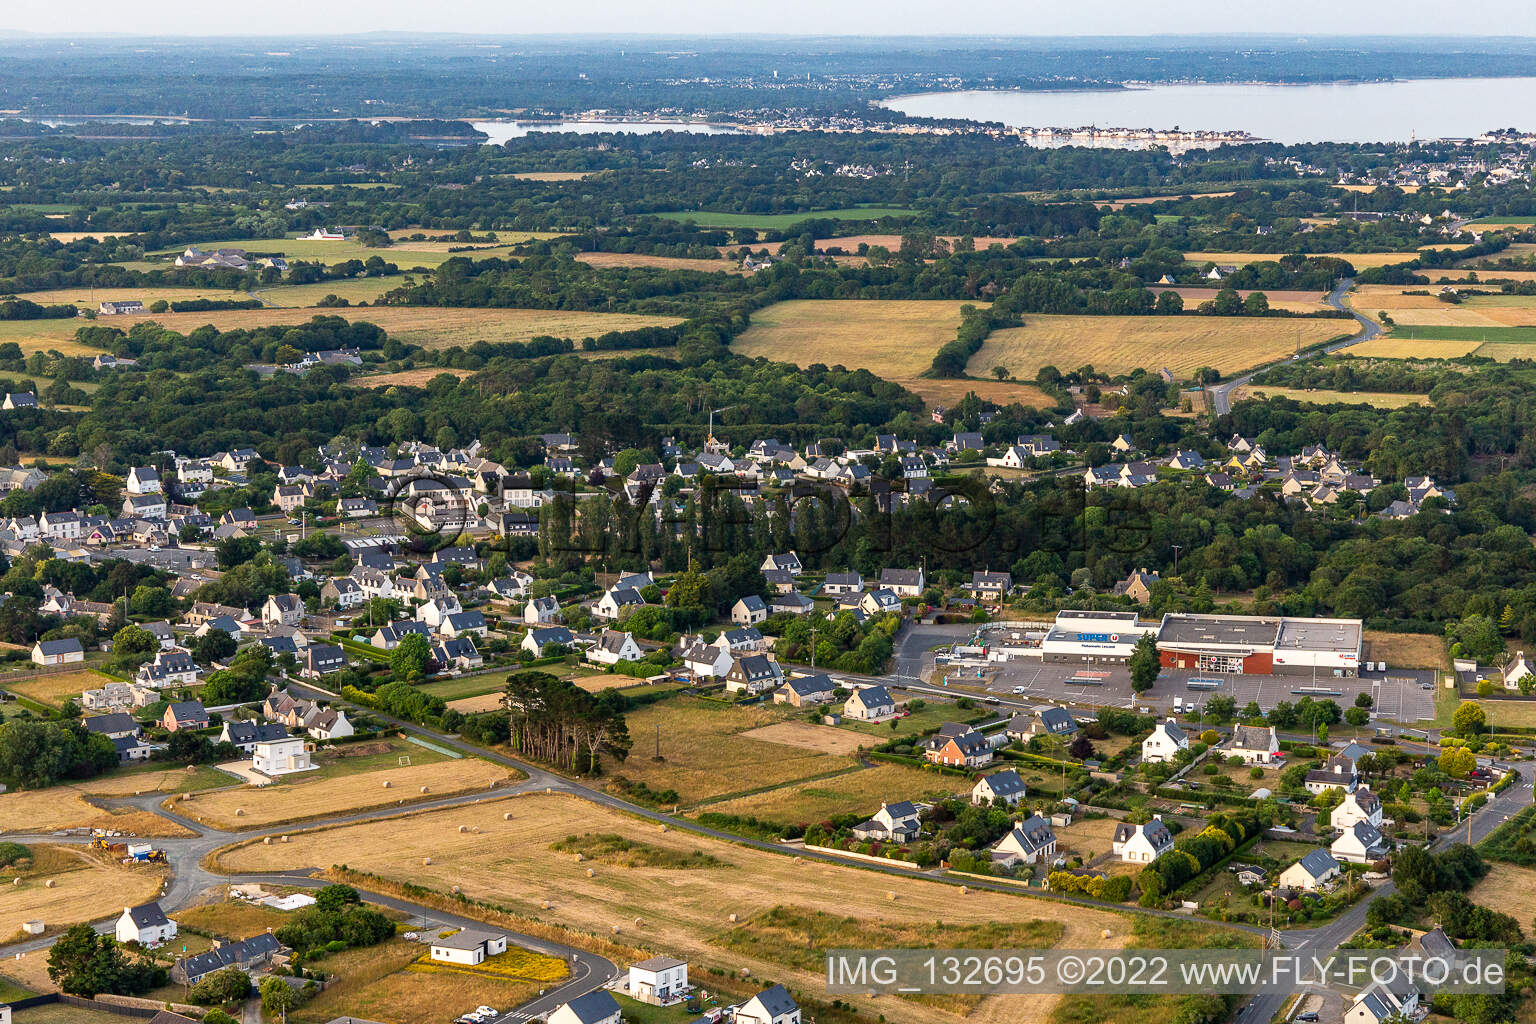 Vue aérienne de Super U et Drive à Plobannalec-Lesconil dans le département Finistère, France